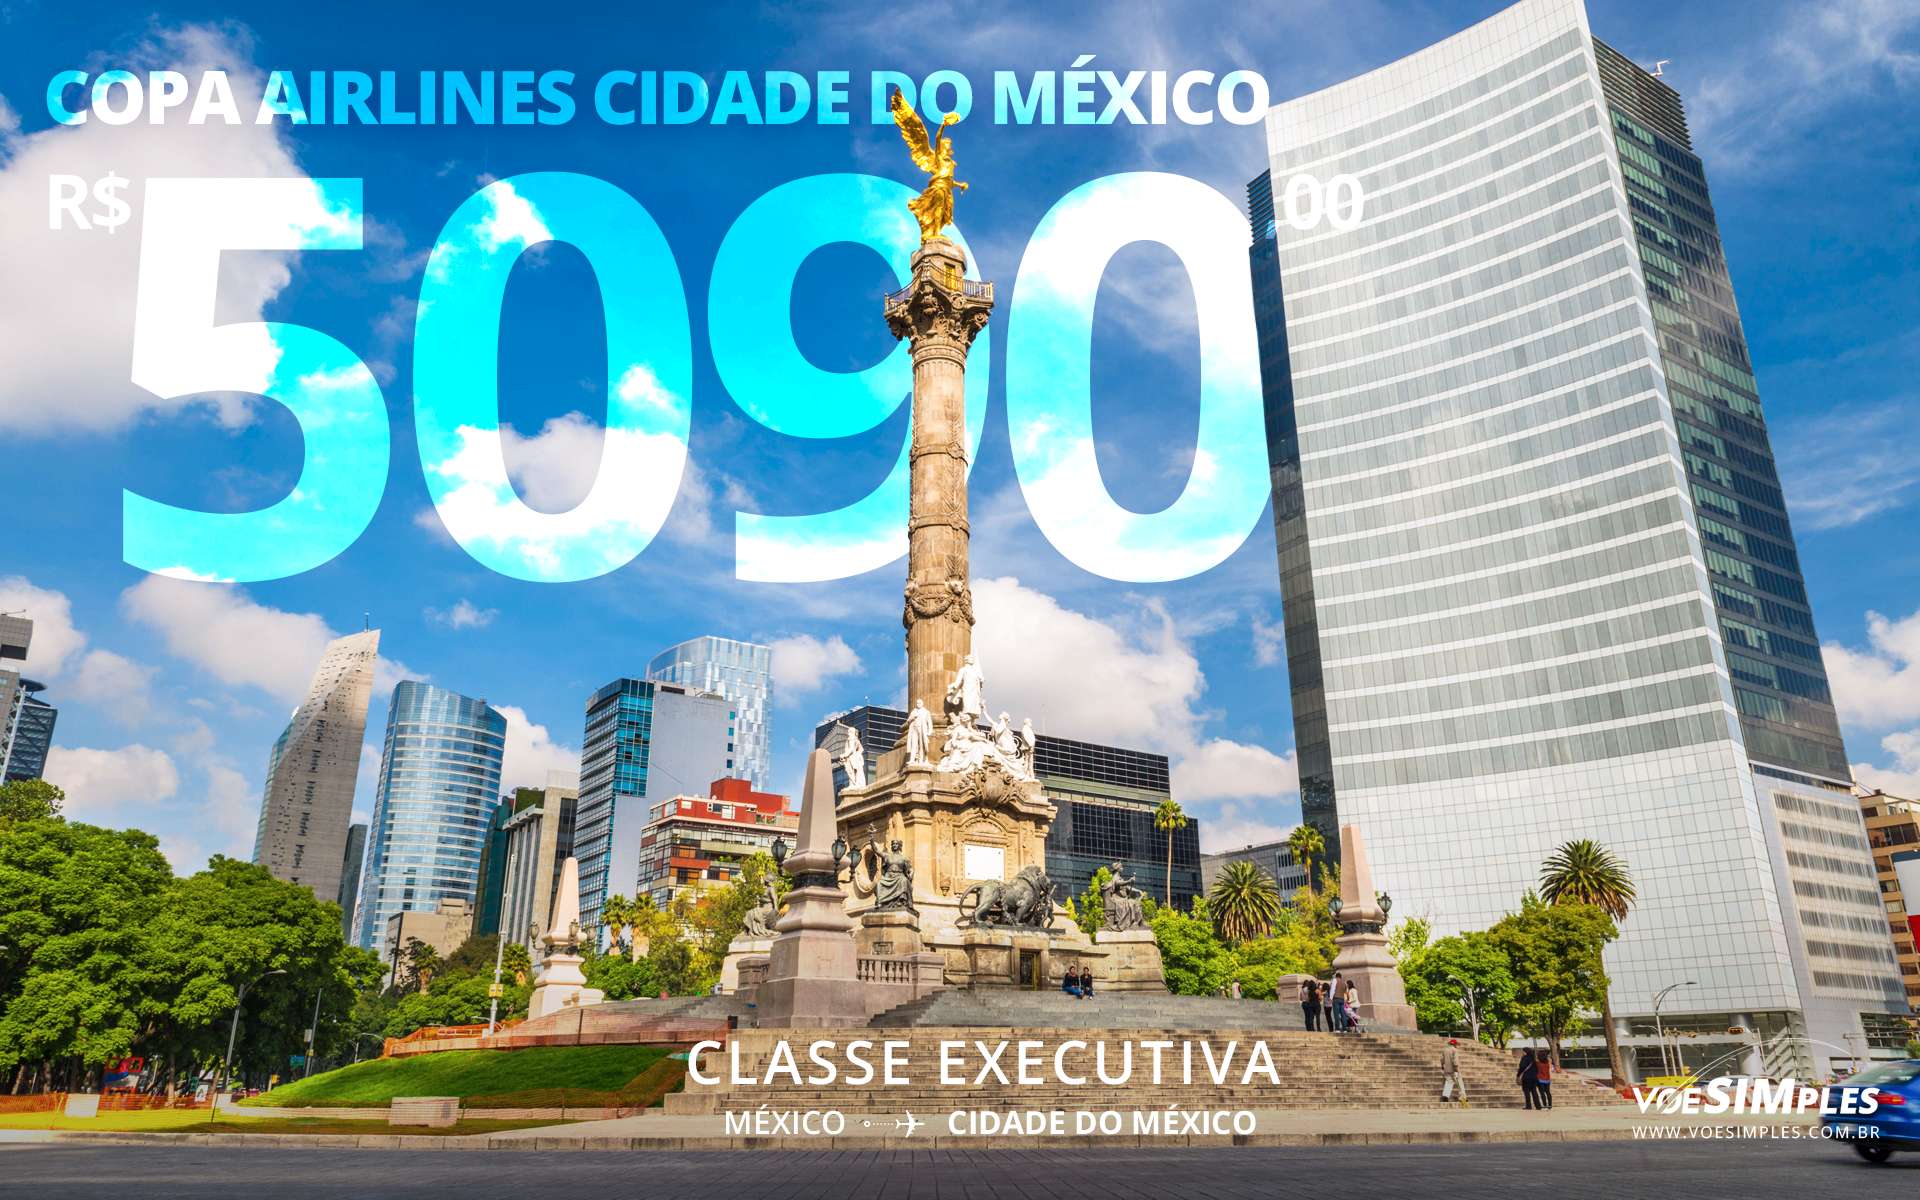 Passagem aérea executiva para Cidade do México